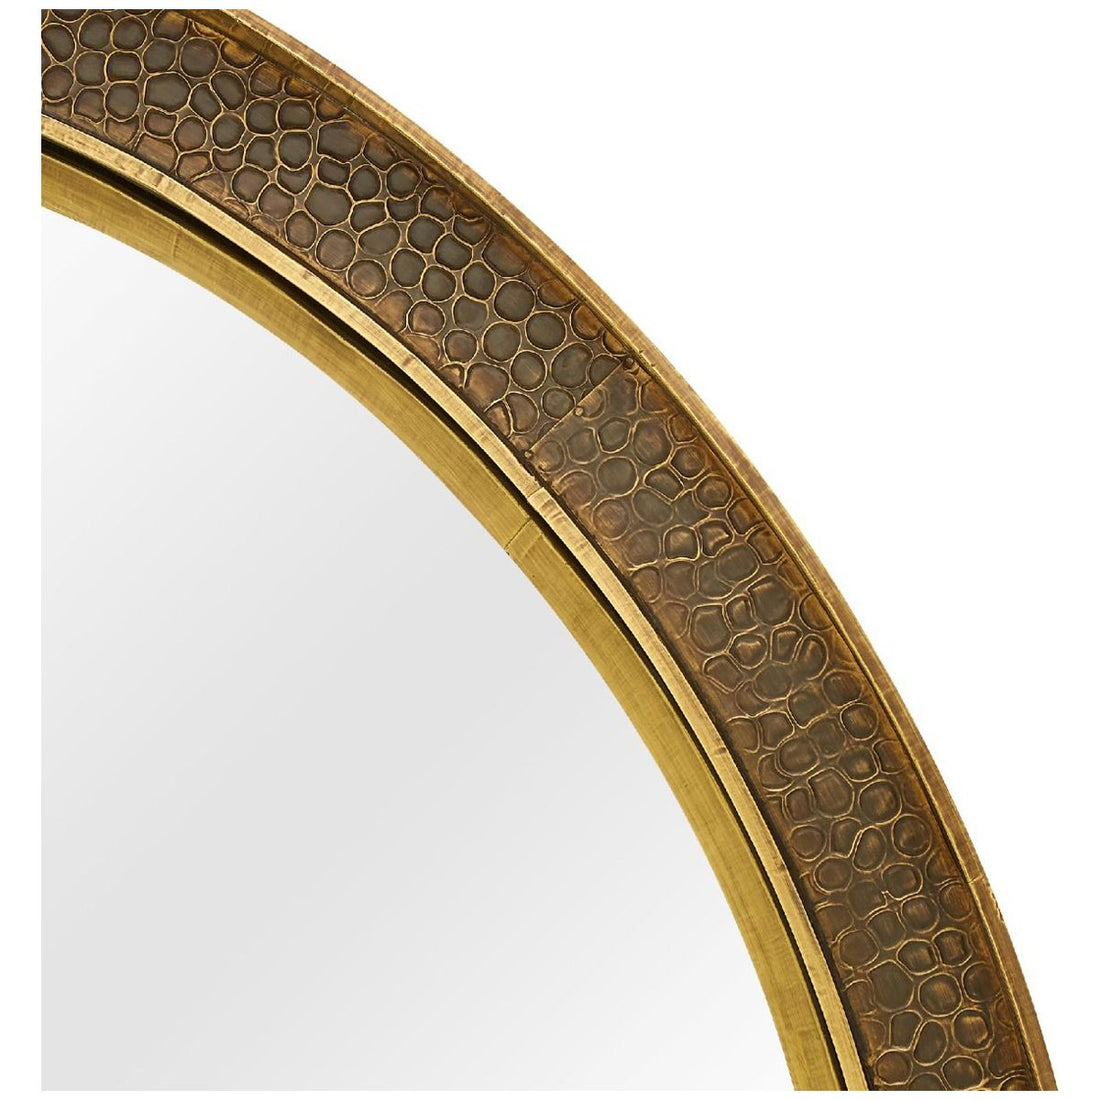 Villa & House Dorian Mirror - Antique Brass